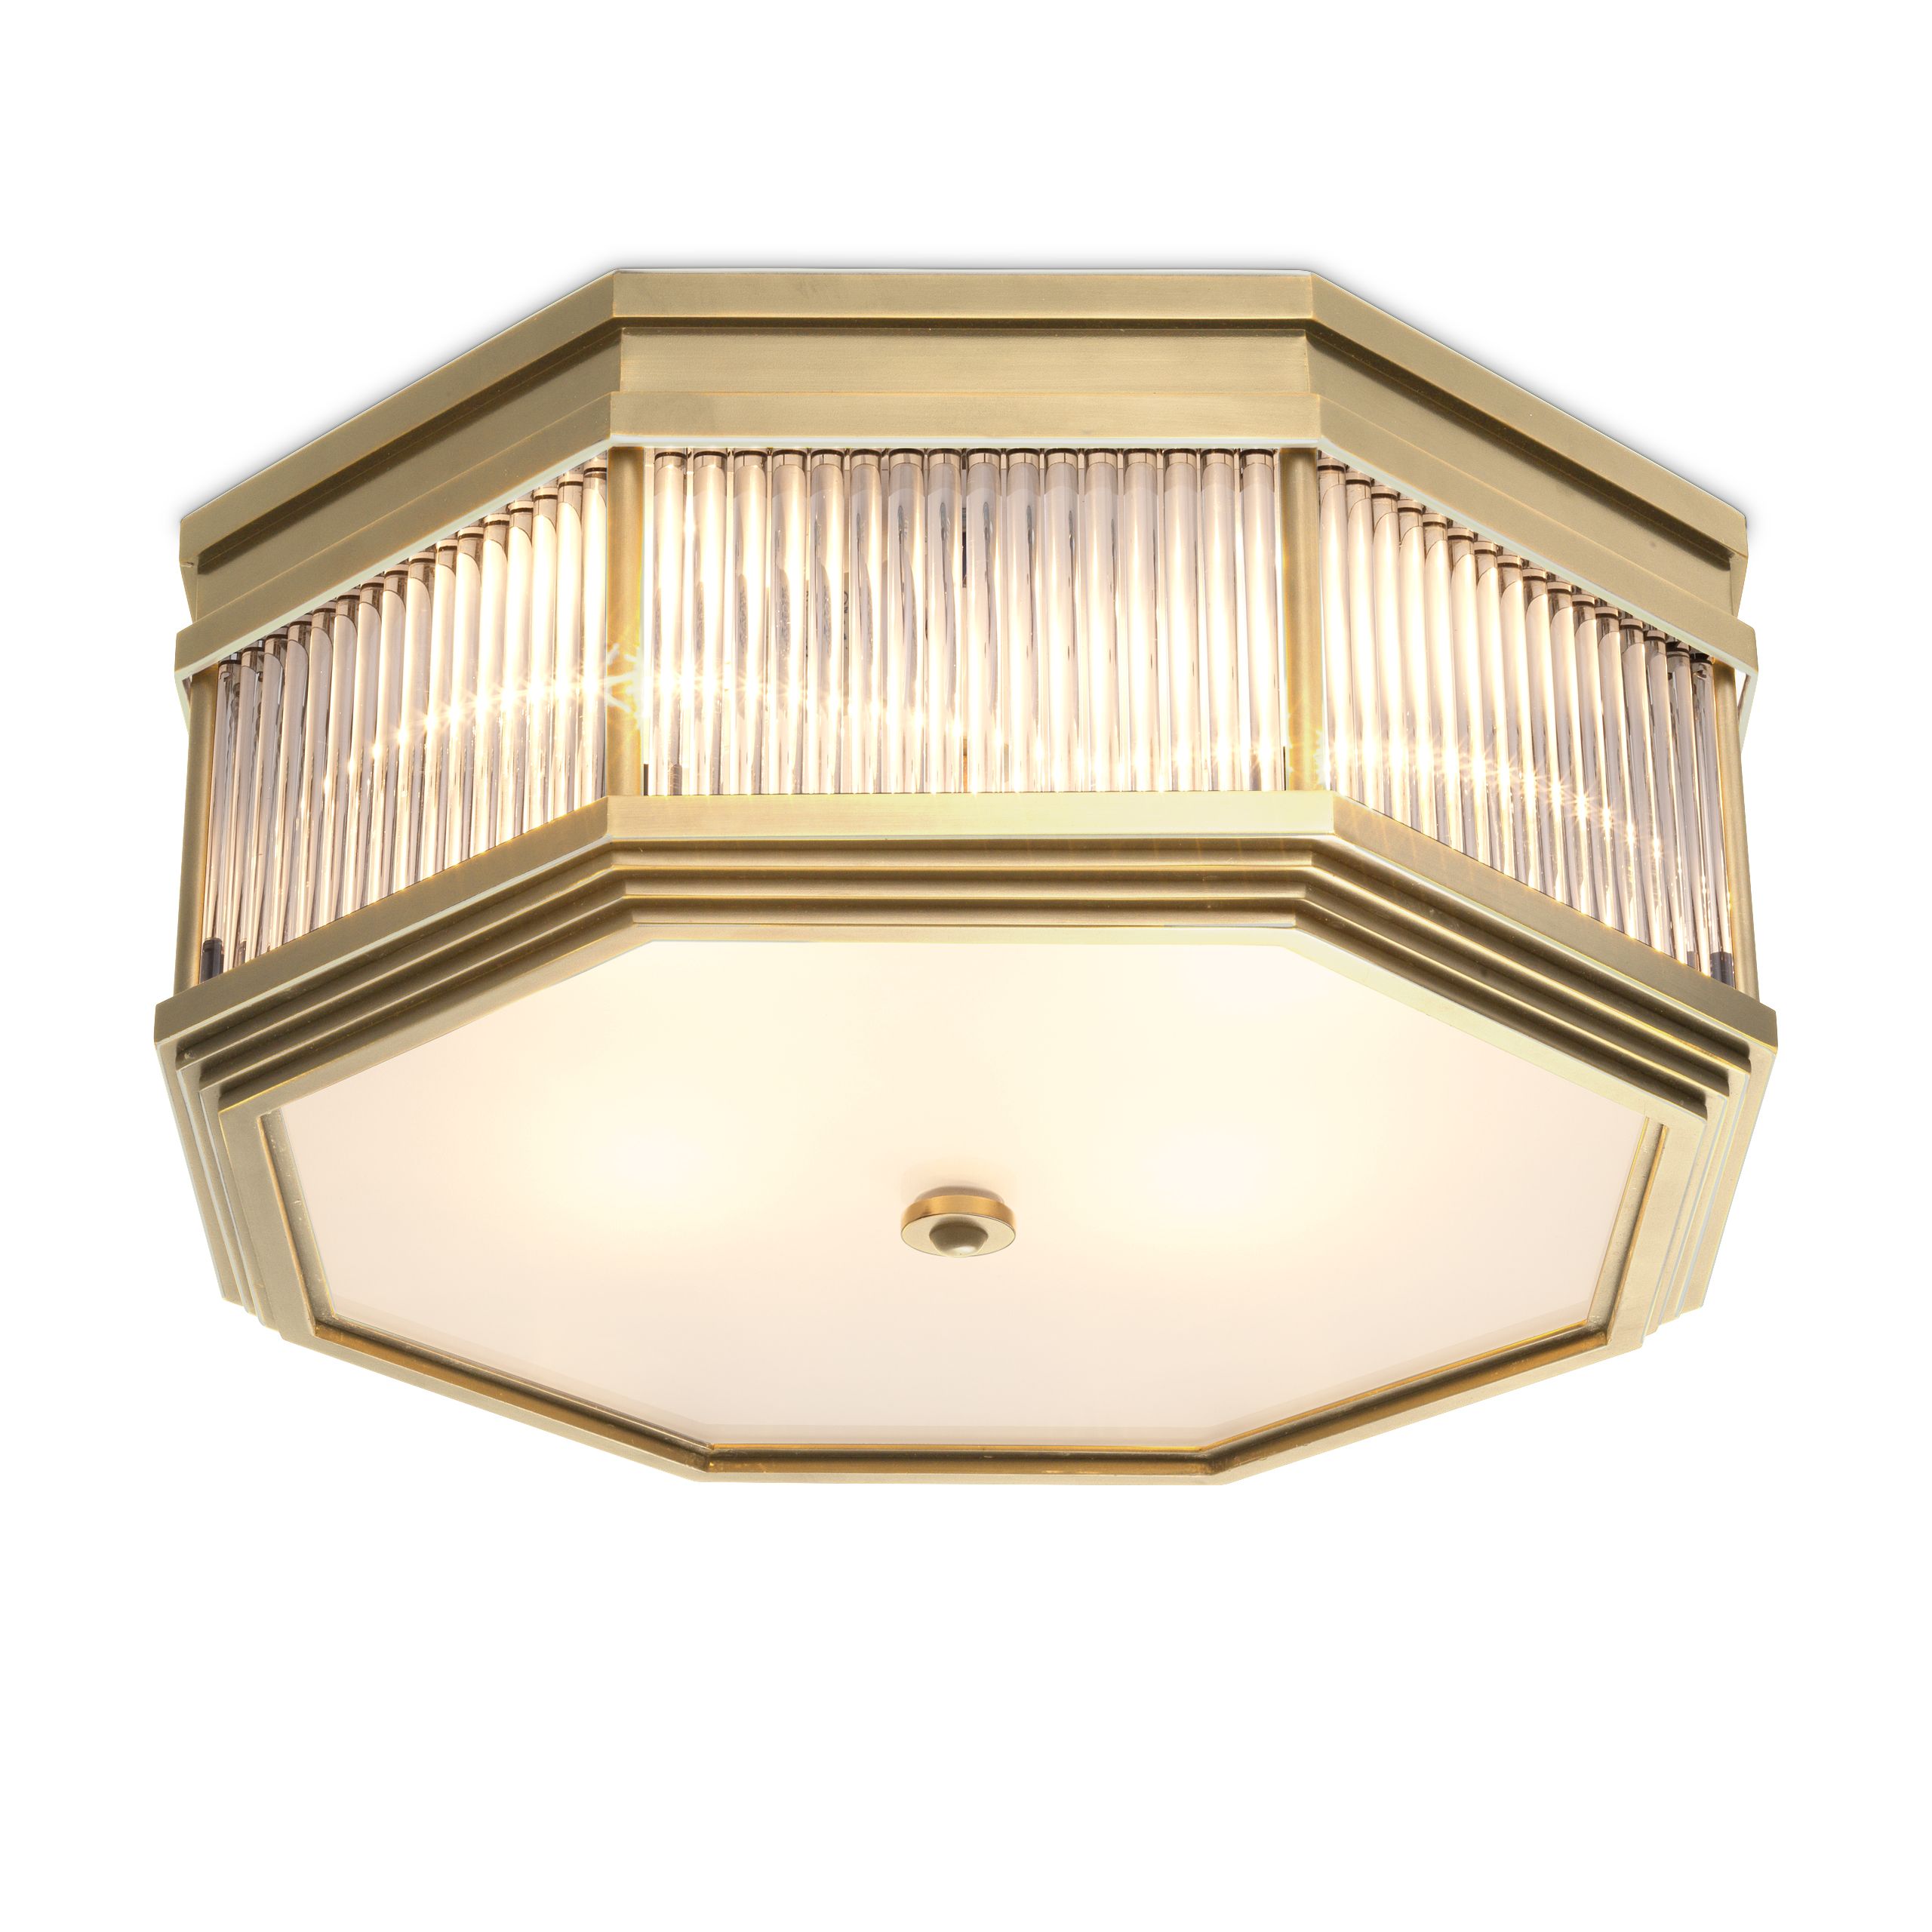 Bagatelle brass ceiling lamp